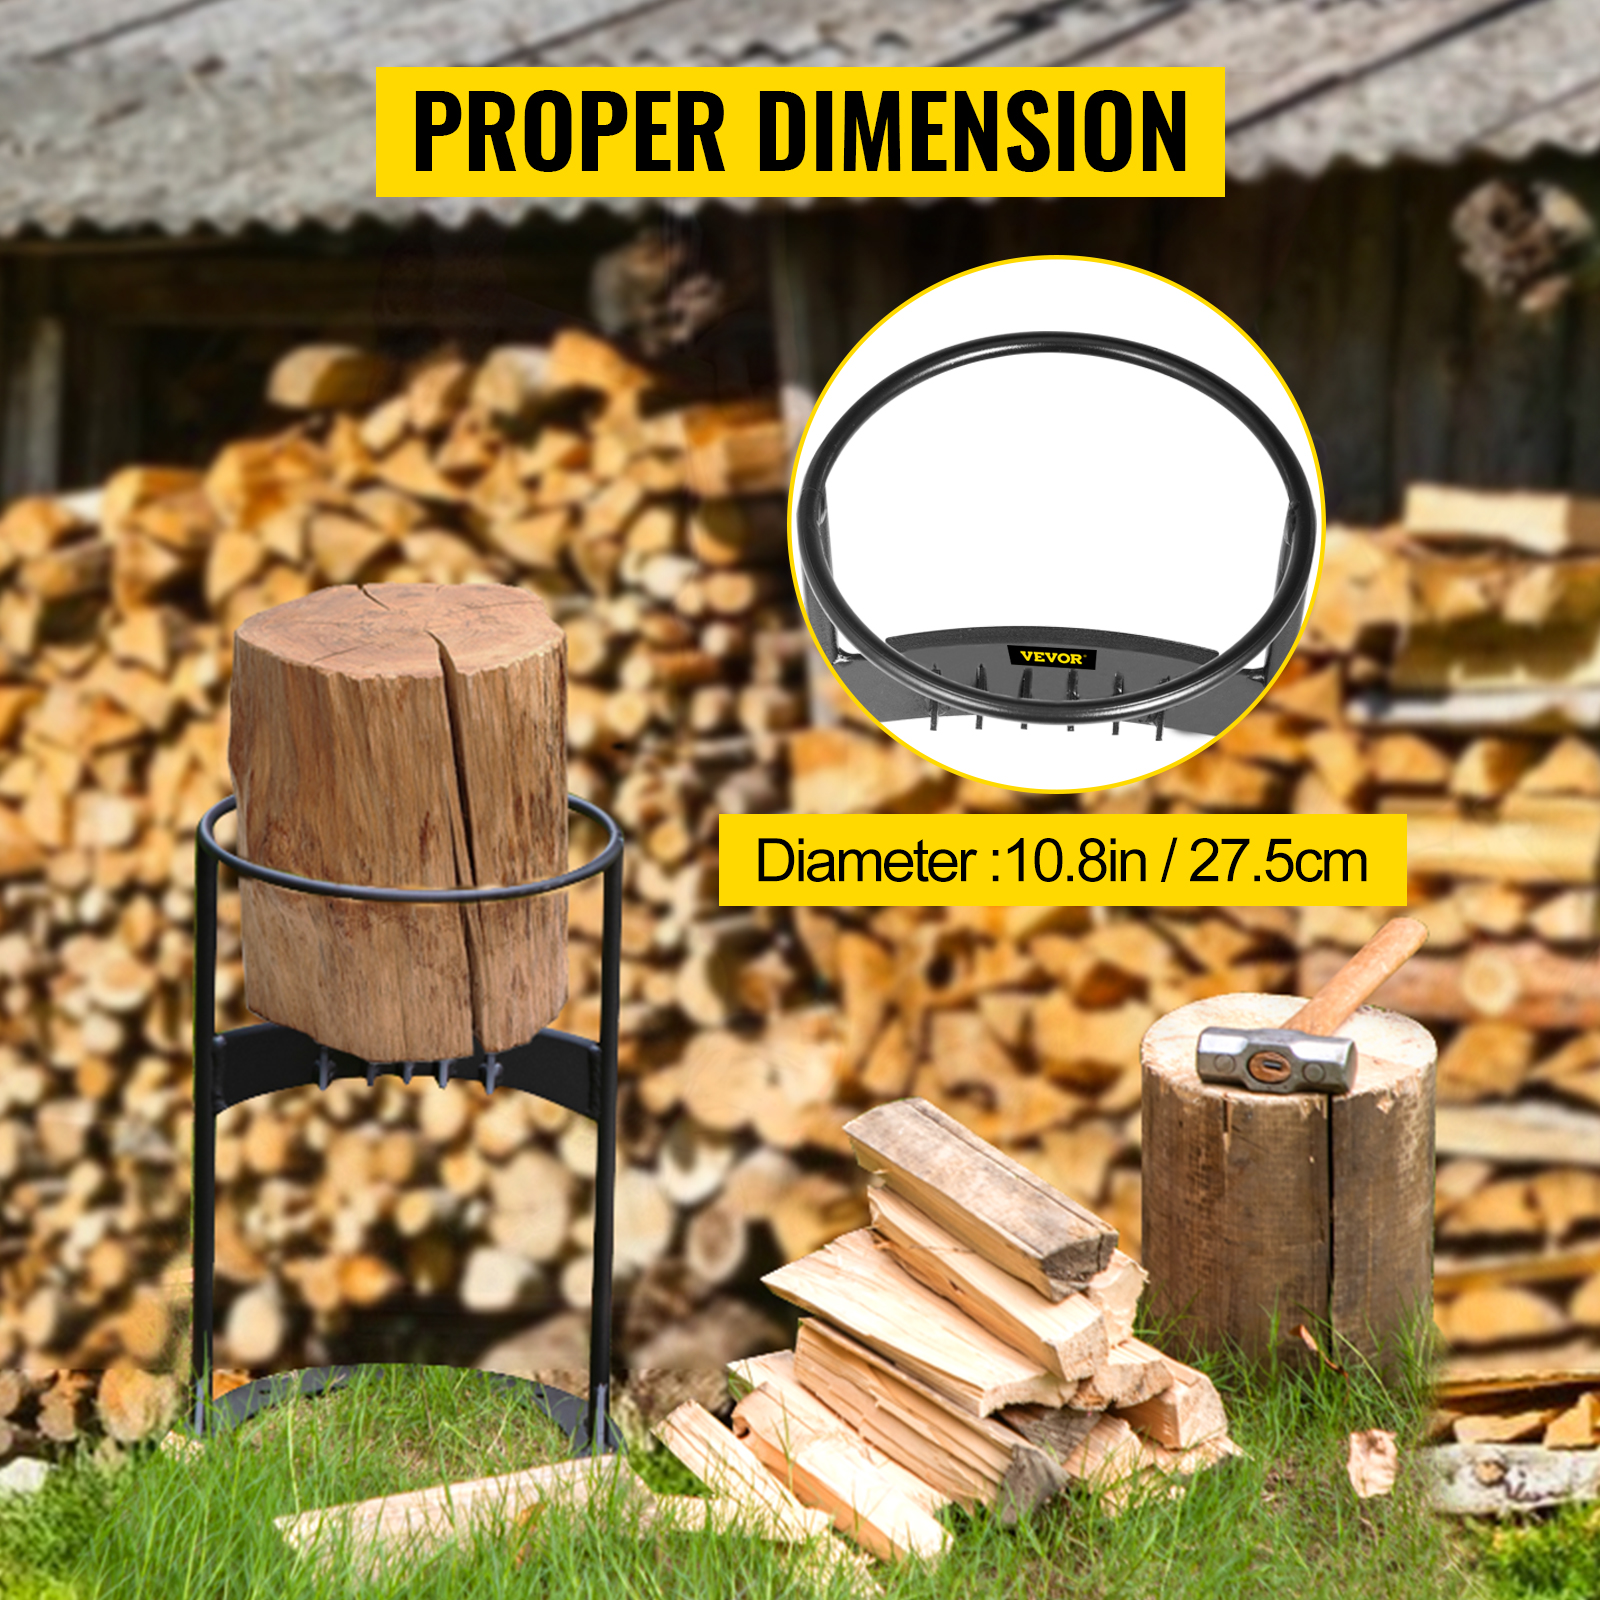 VEVOR Kézi fahasító Q235 vas tűzifa hasító 30,2 cm talp kézi fa hasító 43,5 cm magas hasítószerszám Ø 27,5 cm hasító tűzifa ideális